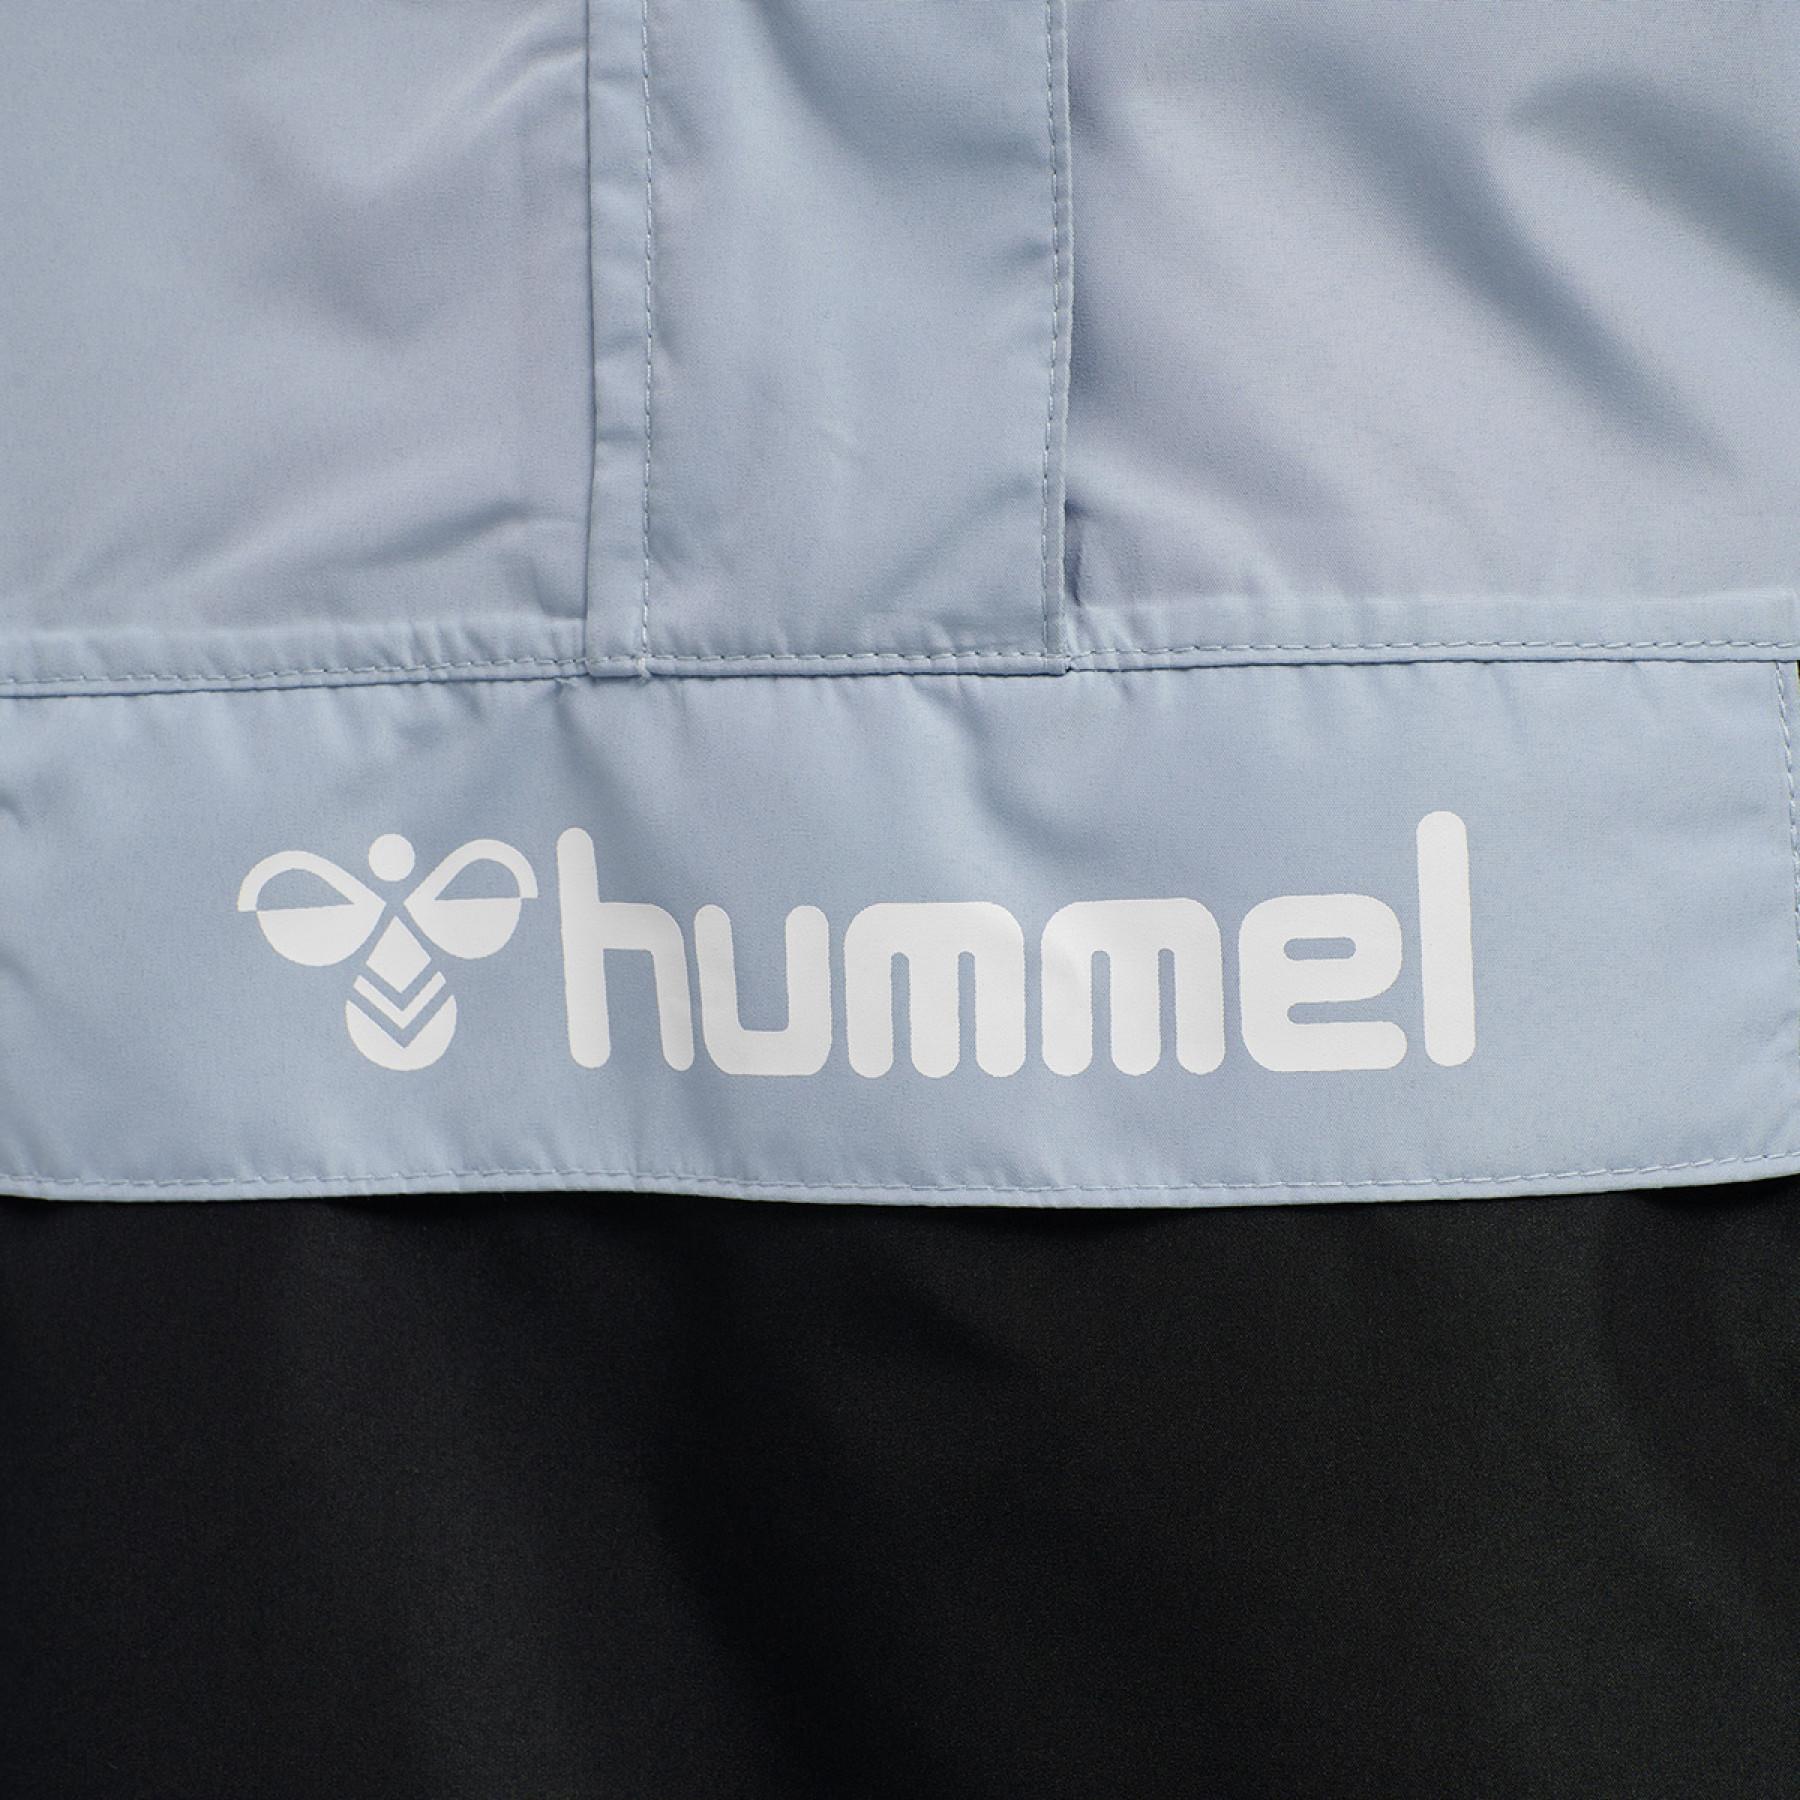 Children's jacket Hummel hmltimu